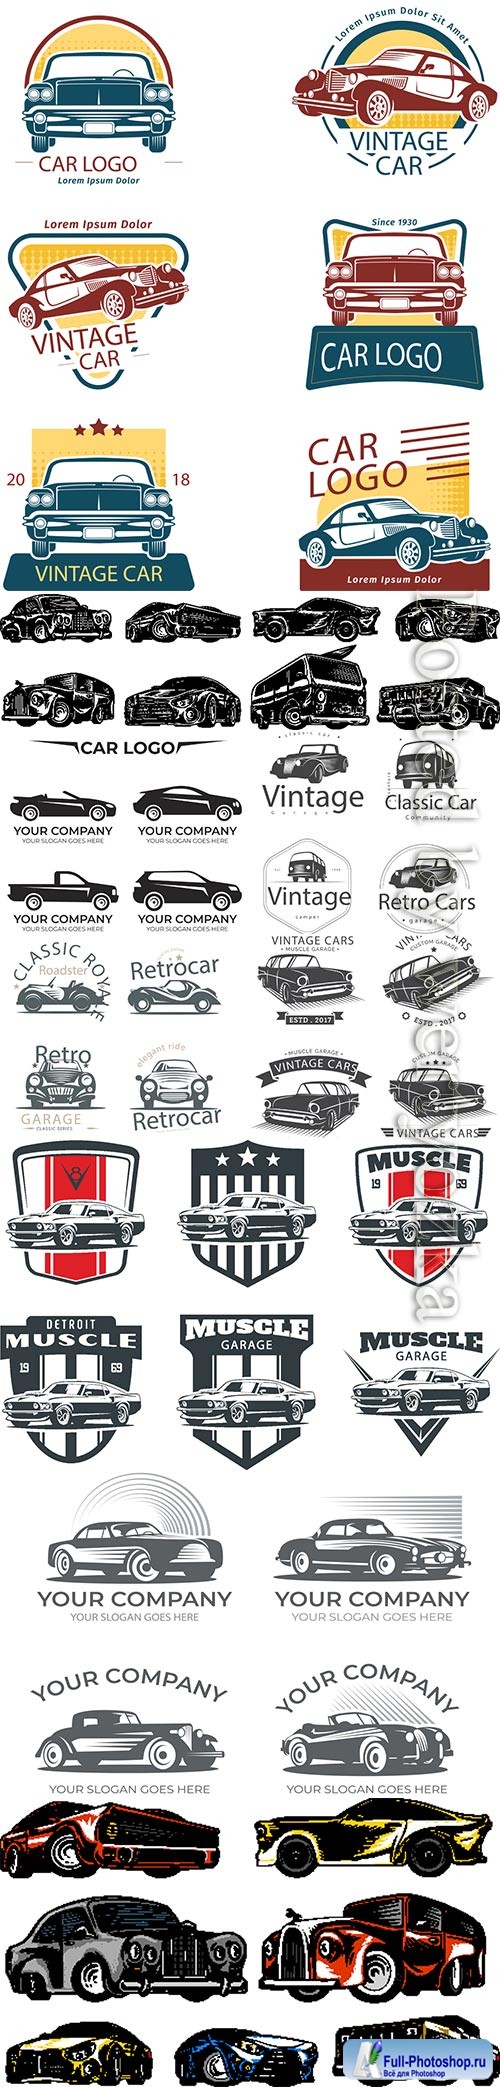 Car logo vector collection